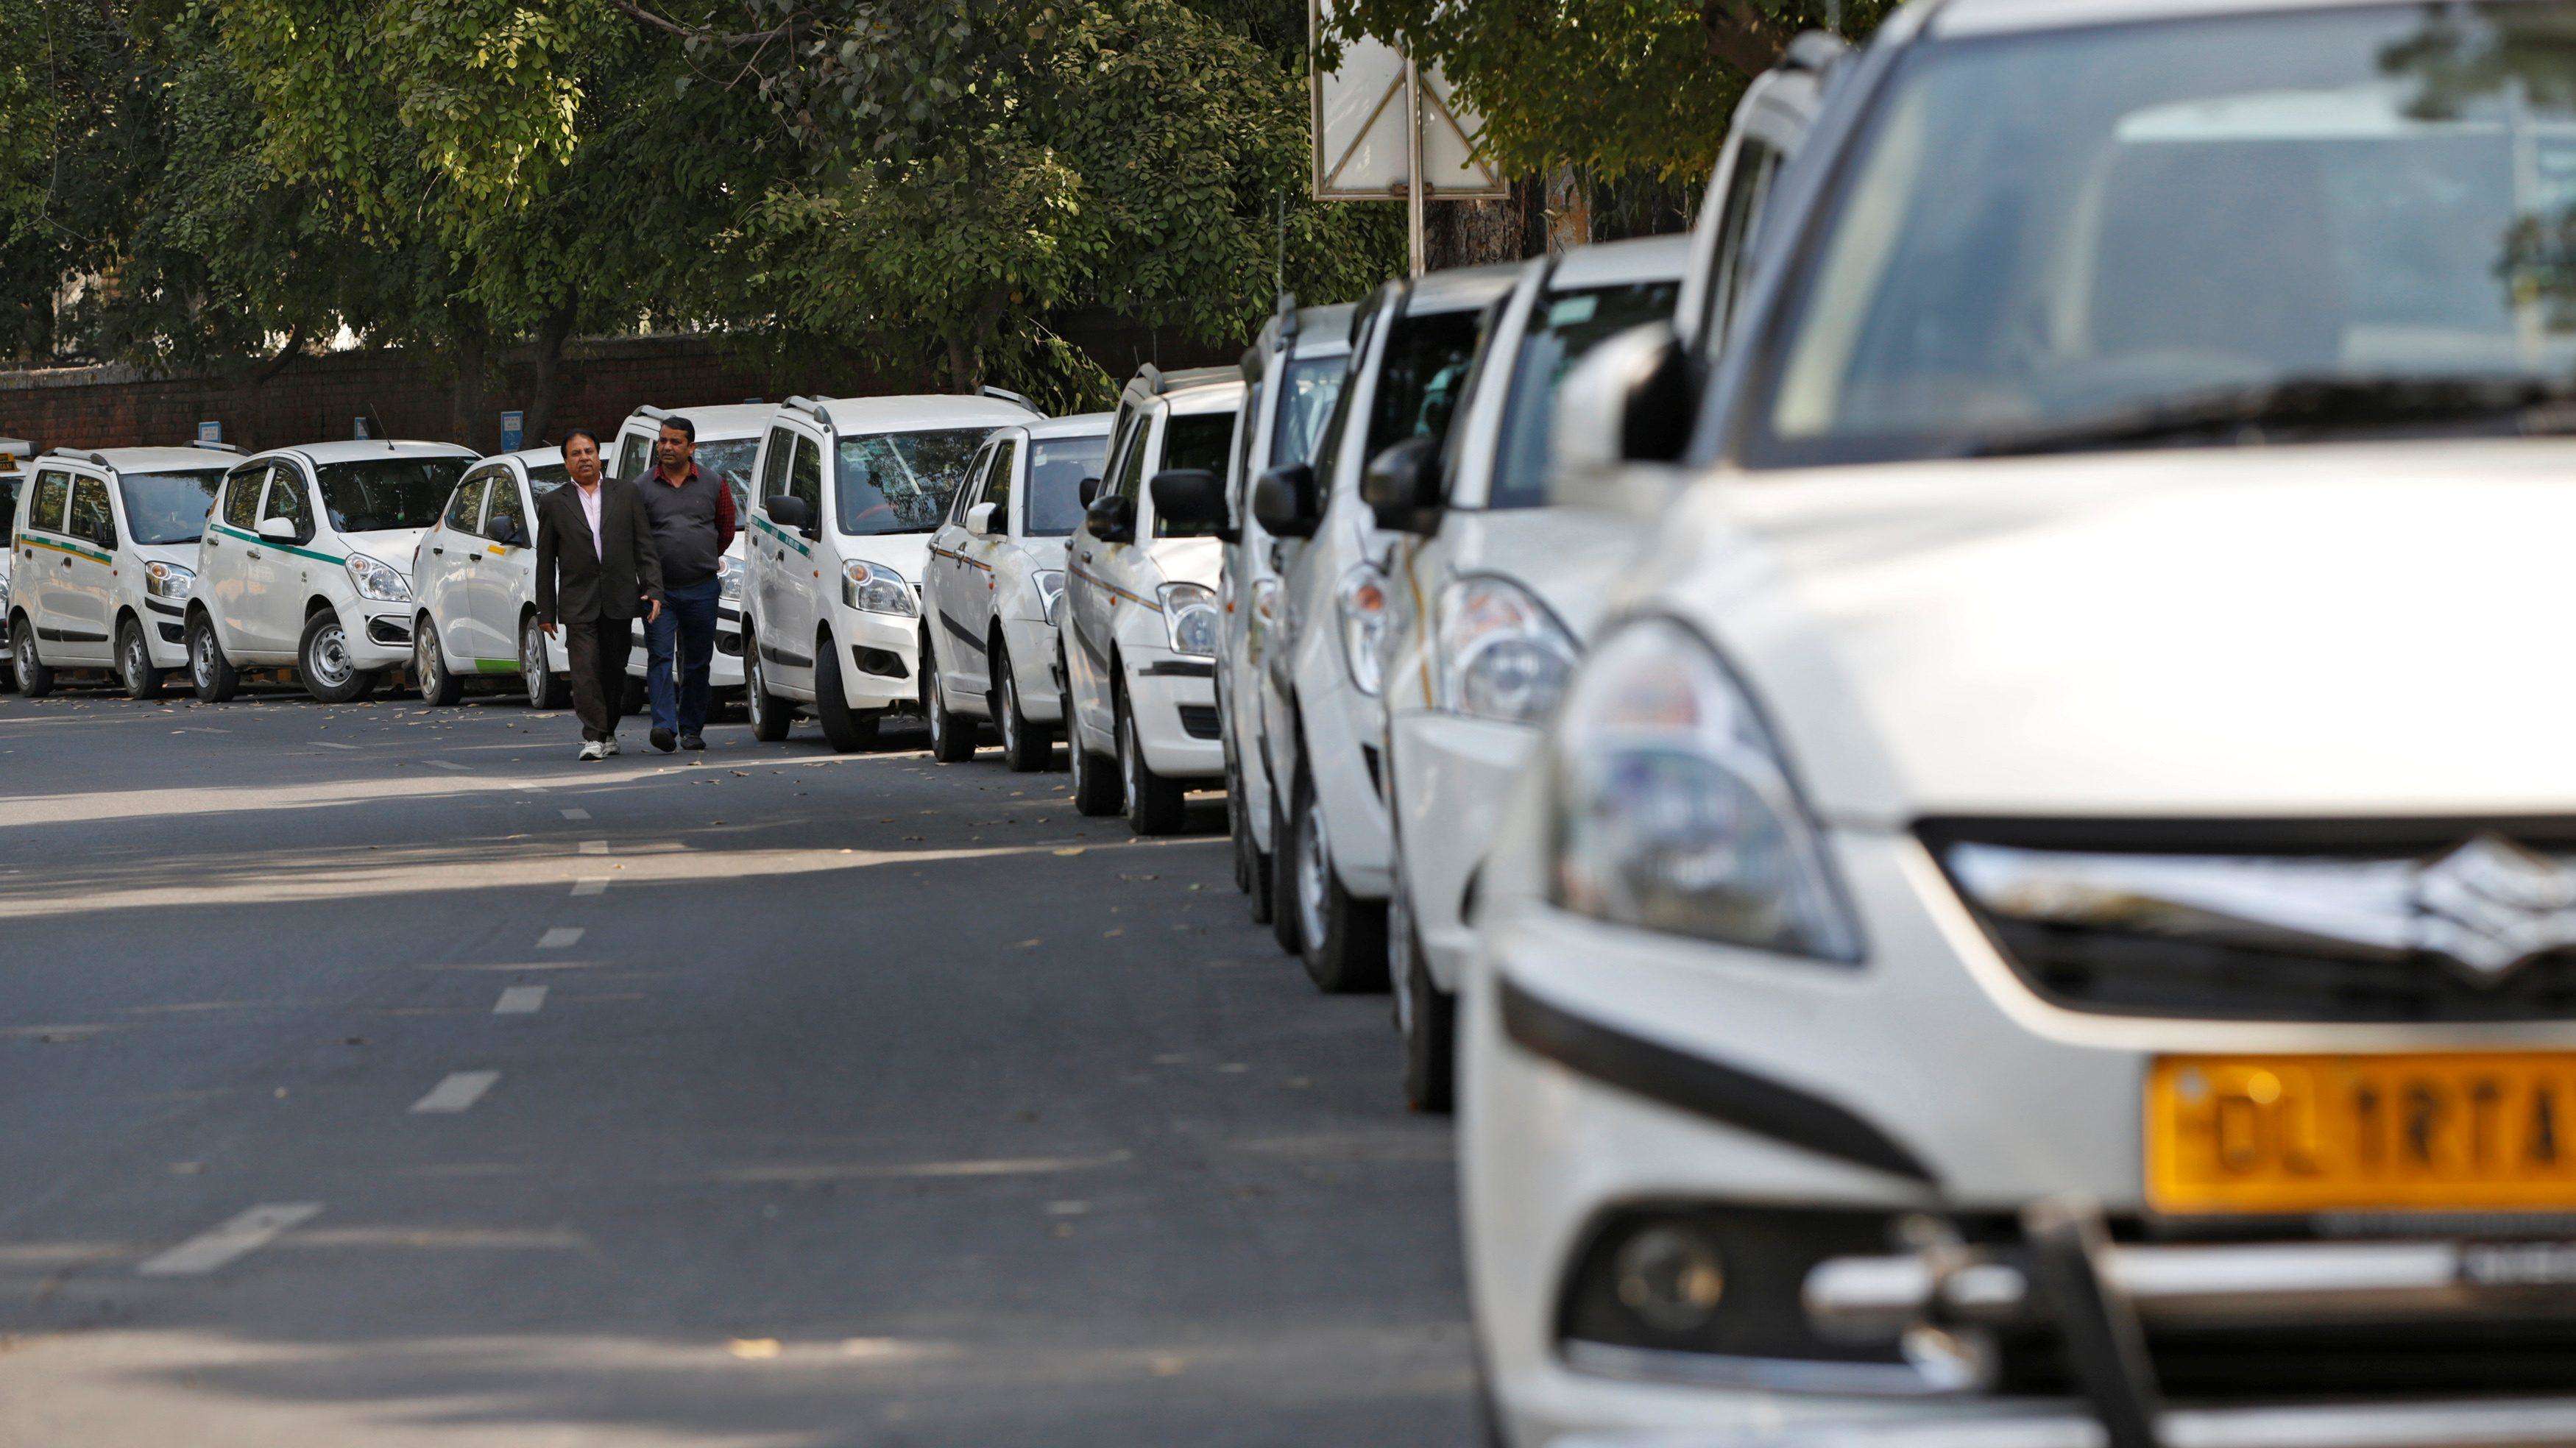 भोपाल में Auto और Cab वाहन चालक व्यवसाय के अभाव में वाहन बेच रहें